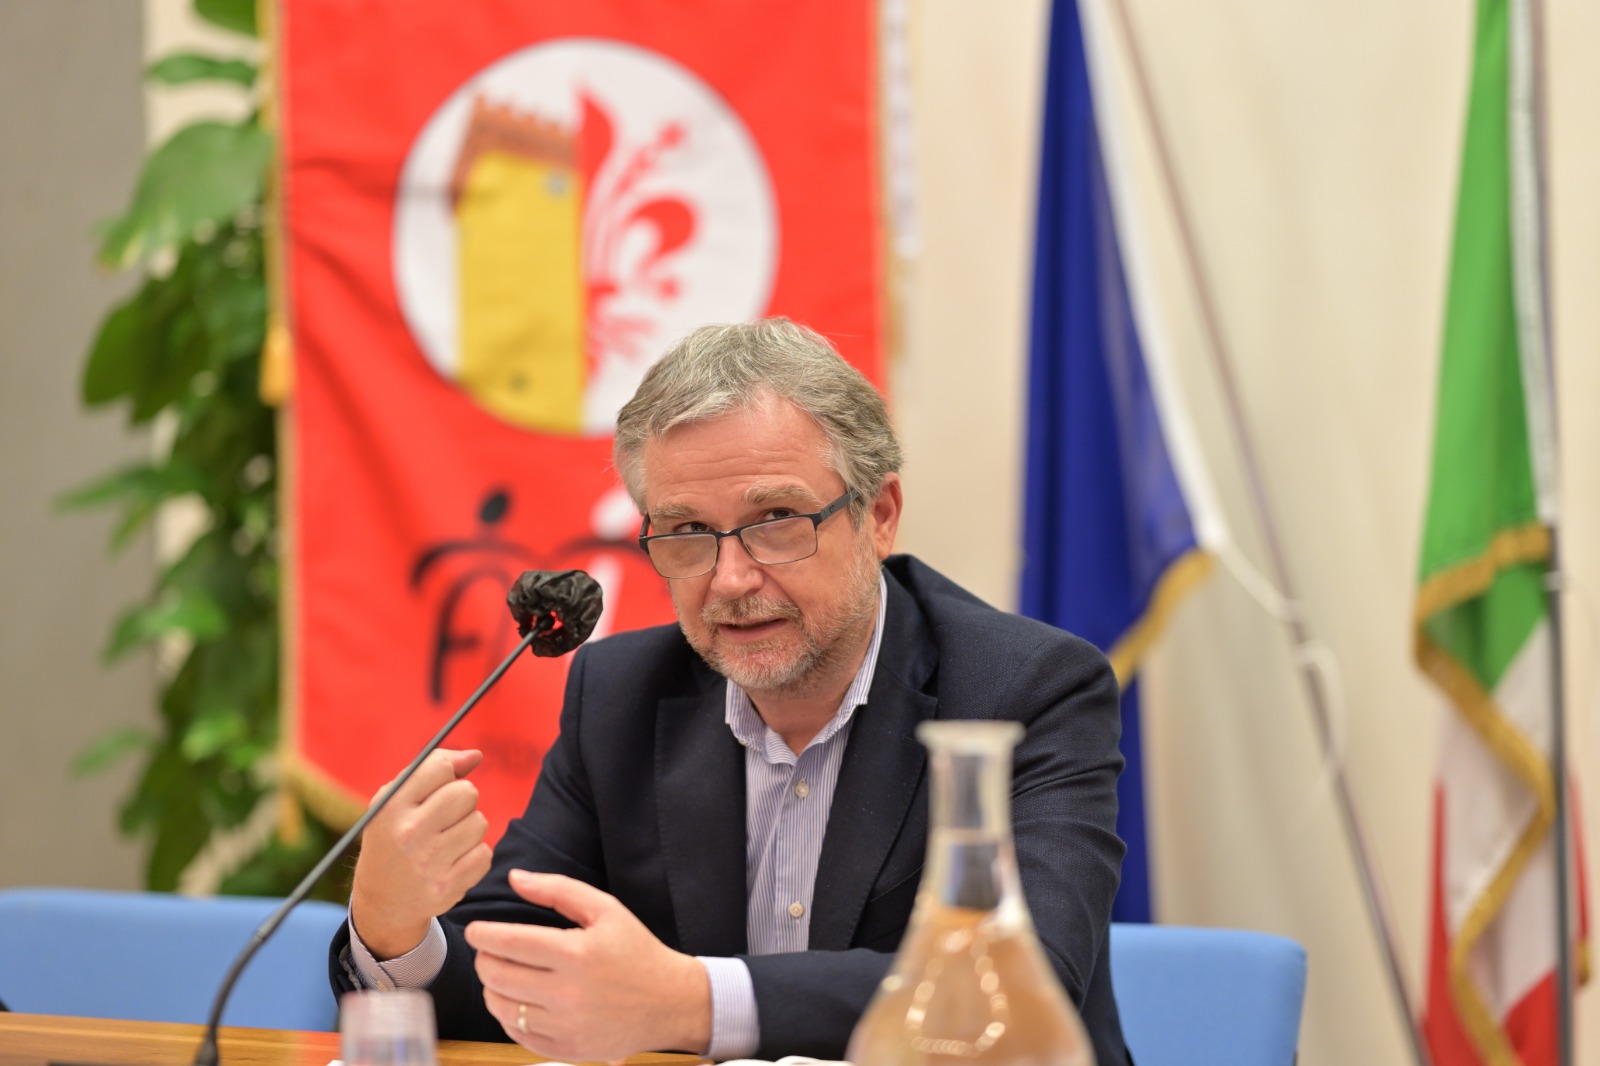 L'assessore Bezzini durante la conferenza stampa (Fonte foto Regione Toscana)